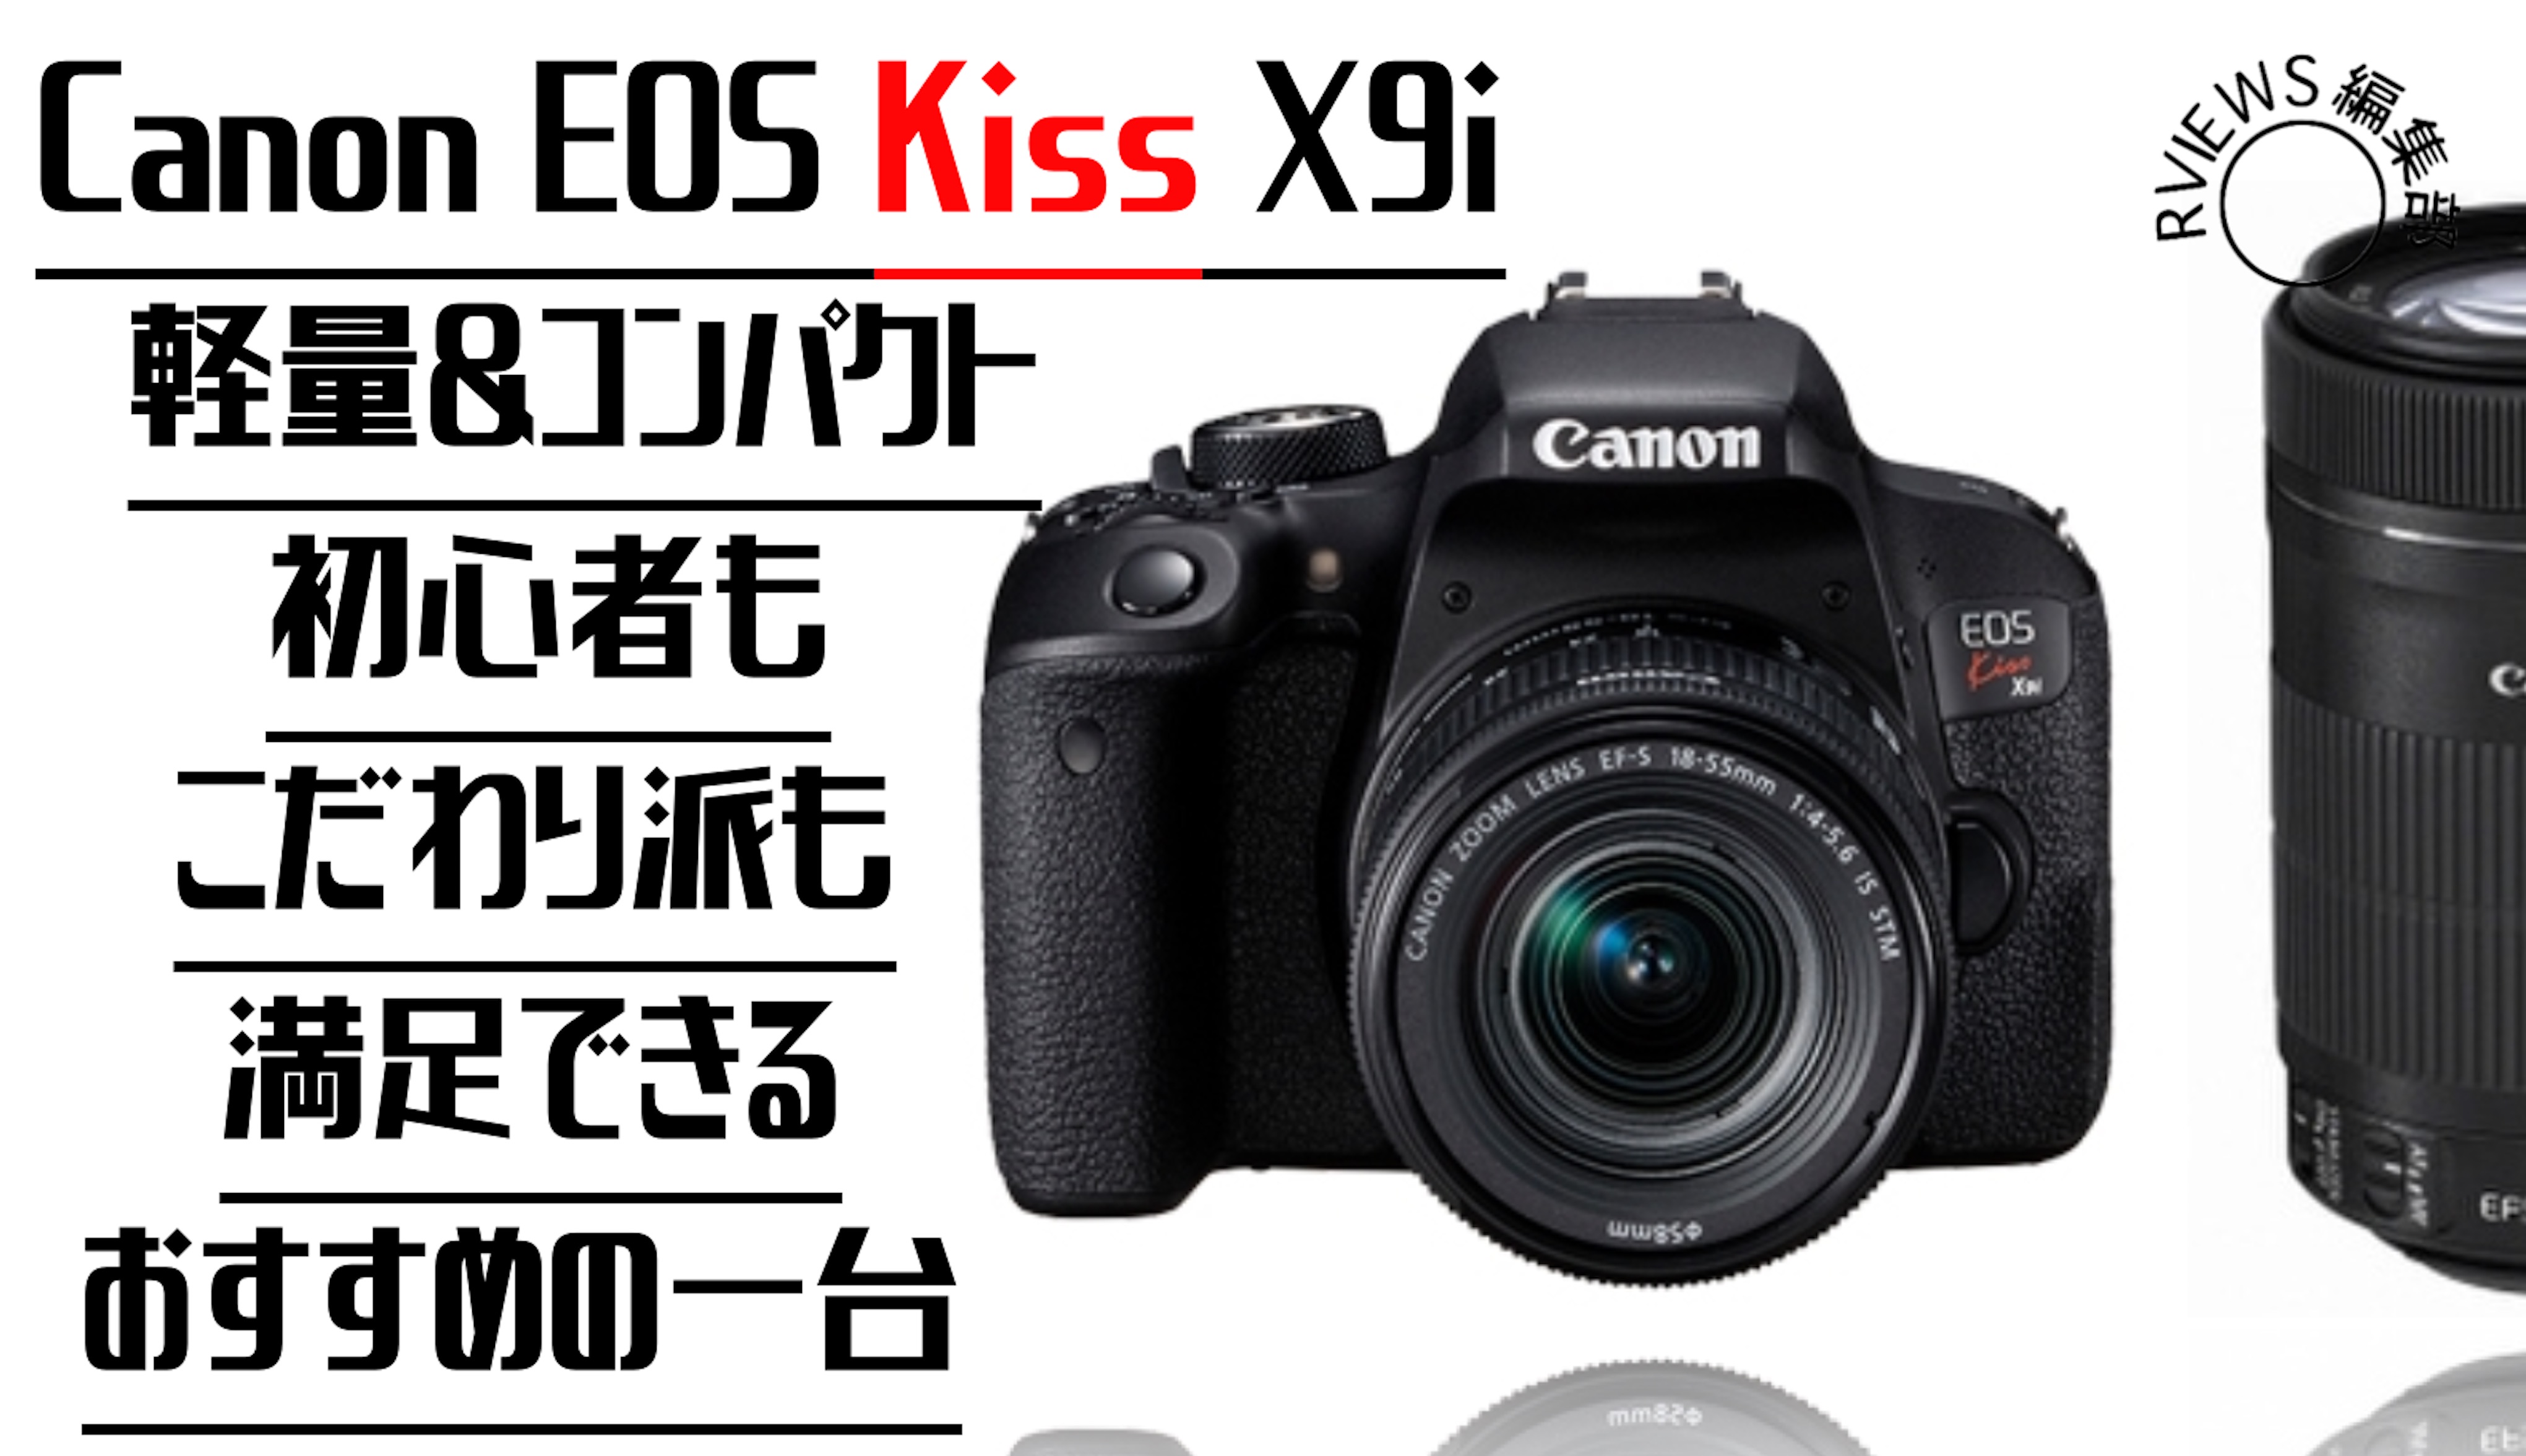 エアブロアーキヤノンCanon EOS Kiss X9i デジタル一眼レフカメラ